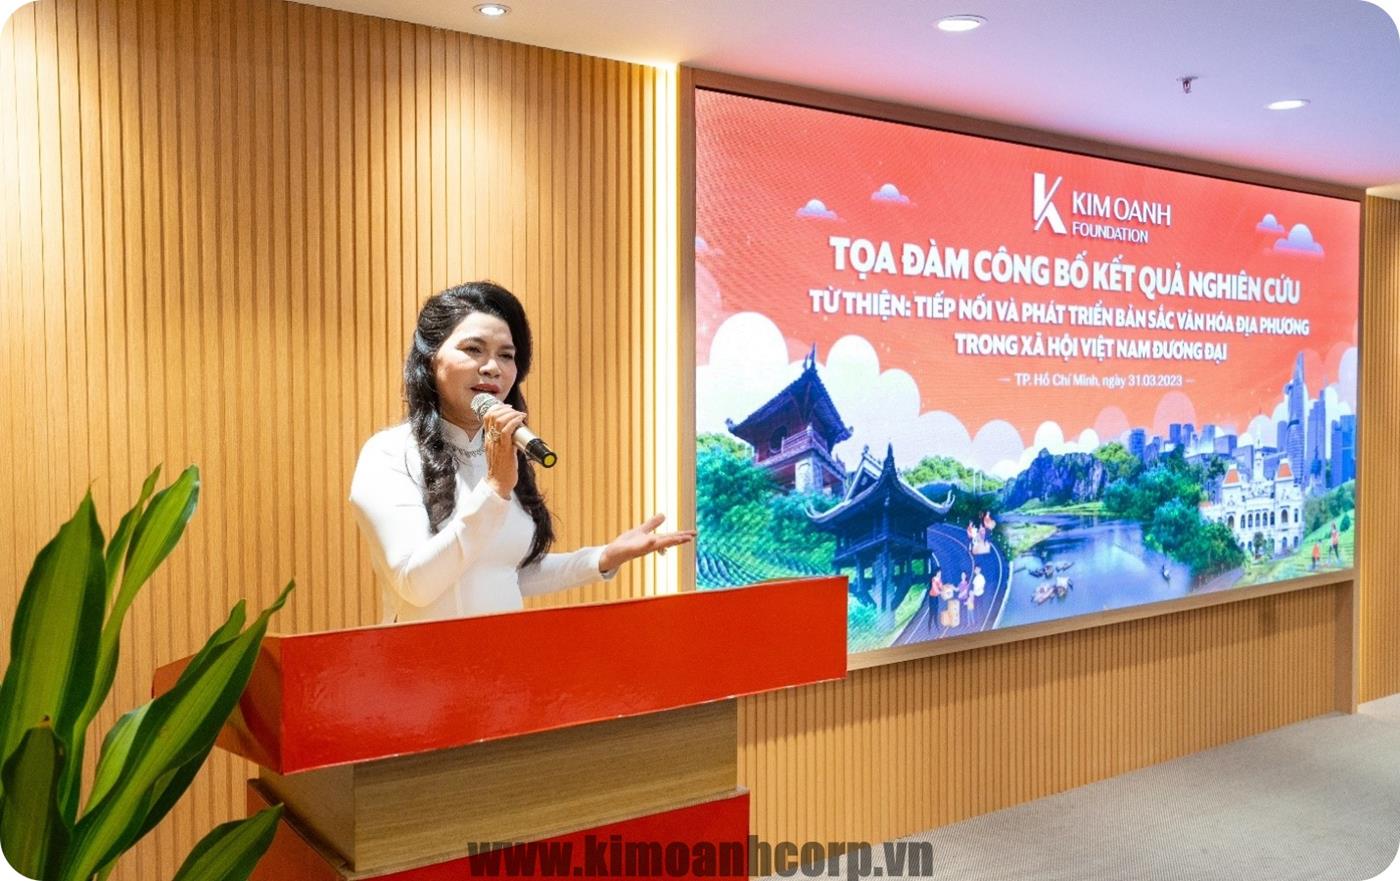 Bà Đặng Thị Kim Oanh – Chủ tịch Hội đồng Quản lý Quỹ Từ thiện Kim Oanh Group phát biểu khai mạc tọa đàm